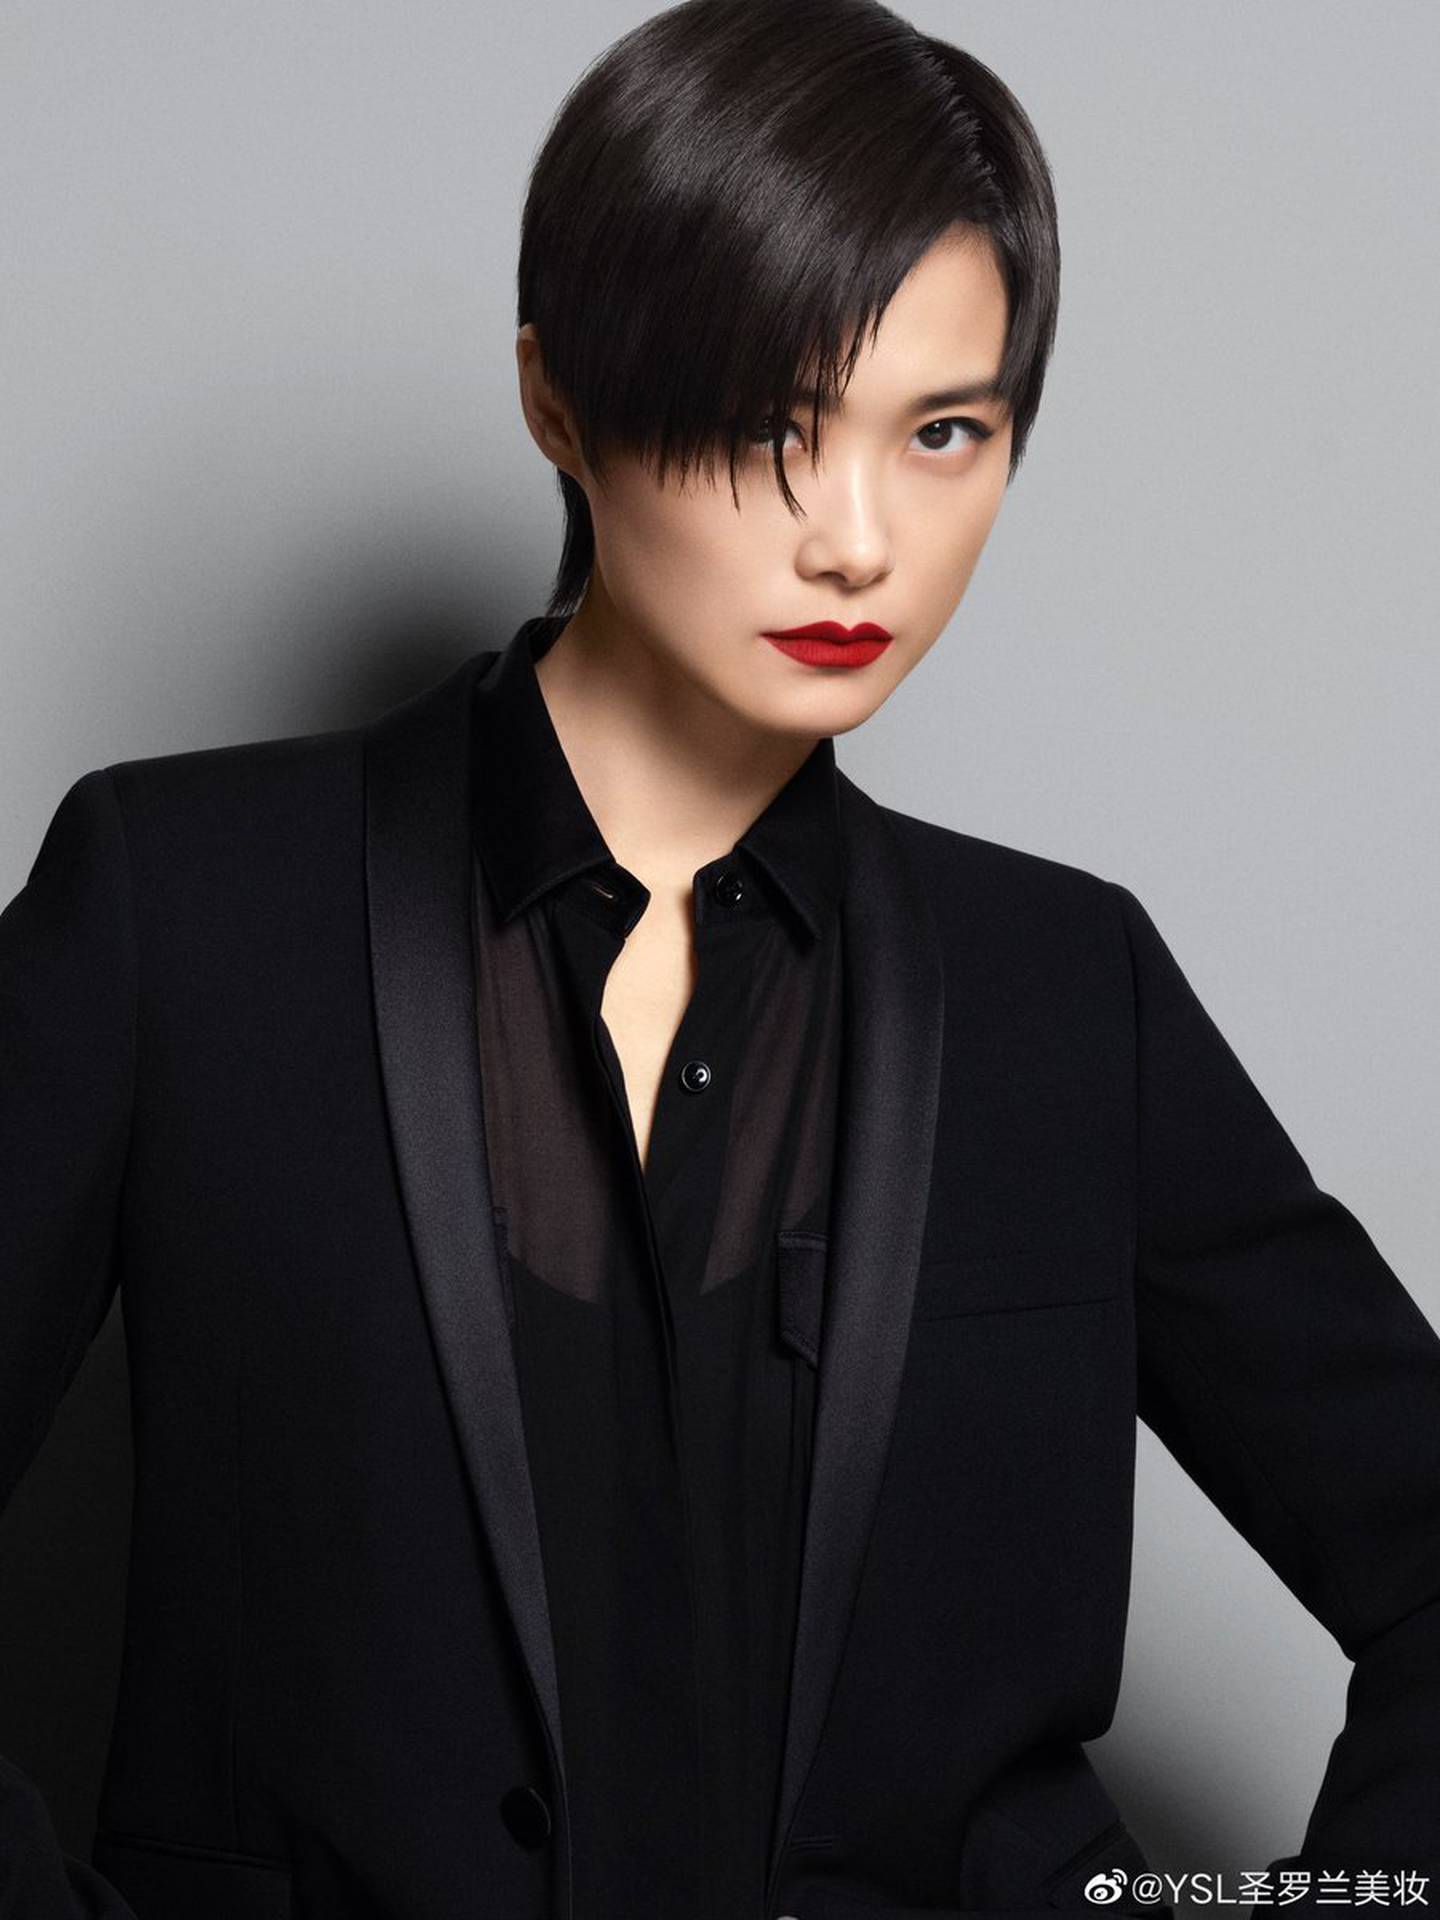 Li Yuchun is YSL Beauty's first Chinese ambassador. YSL Beauty